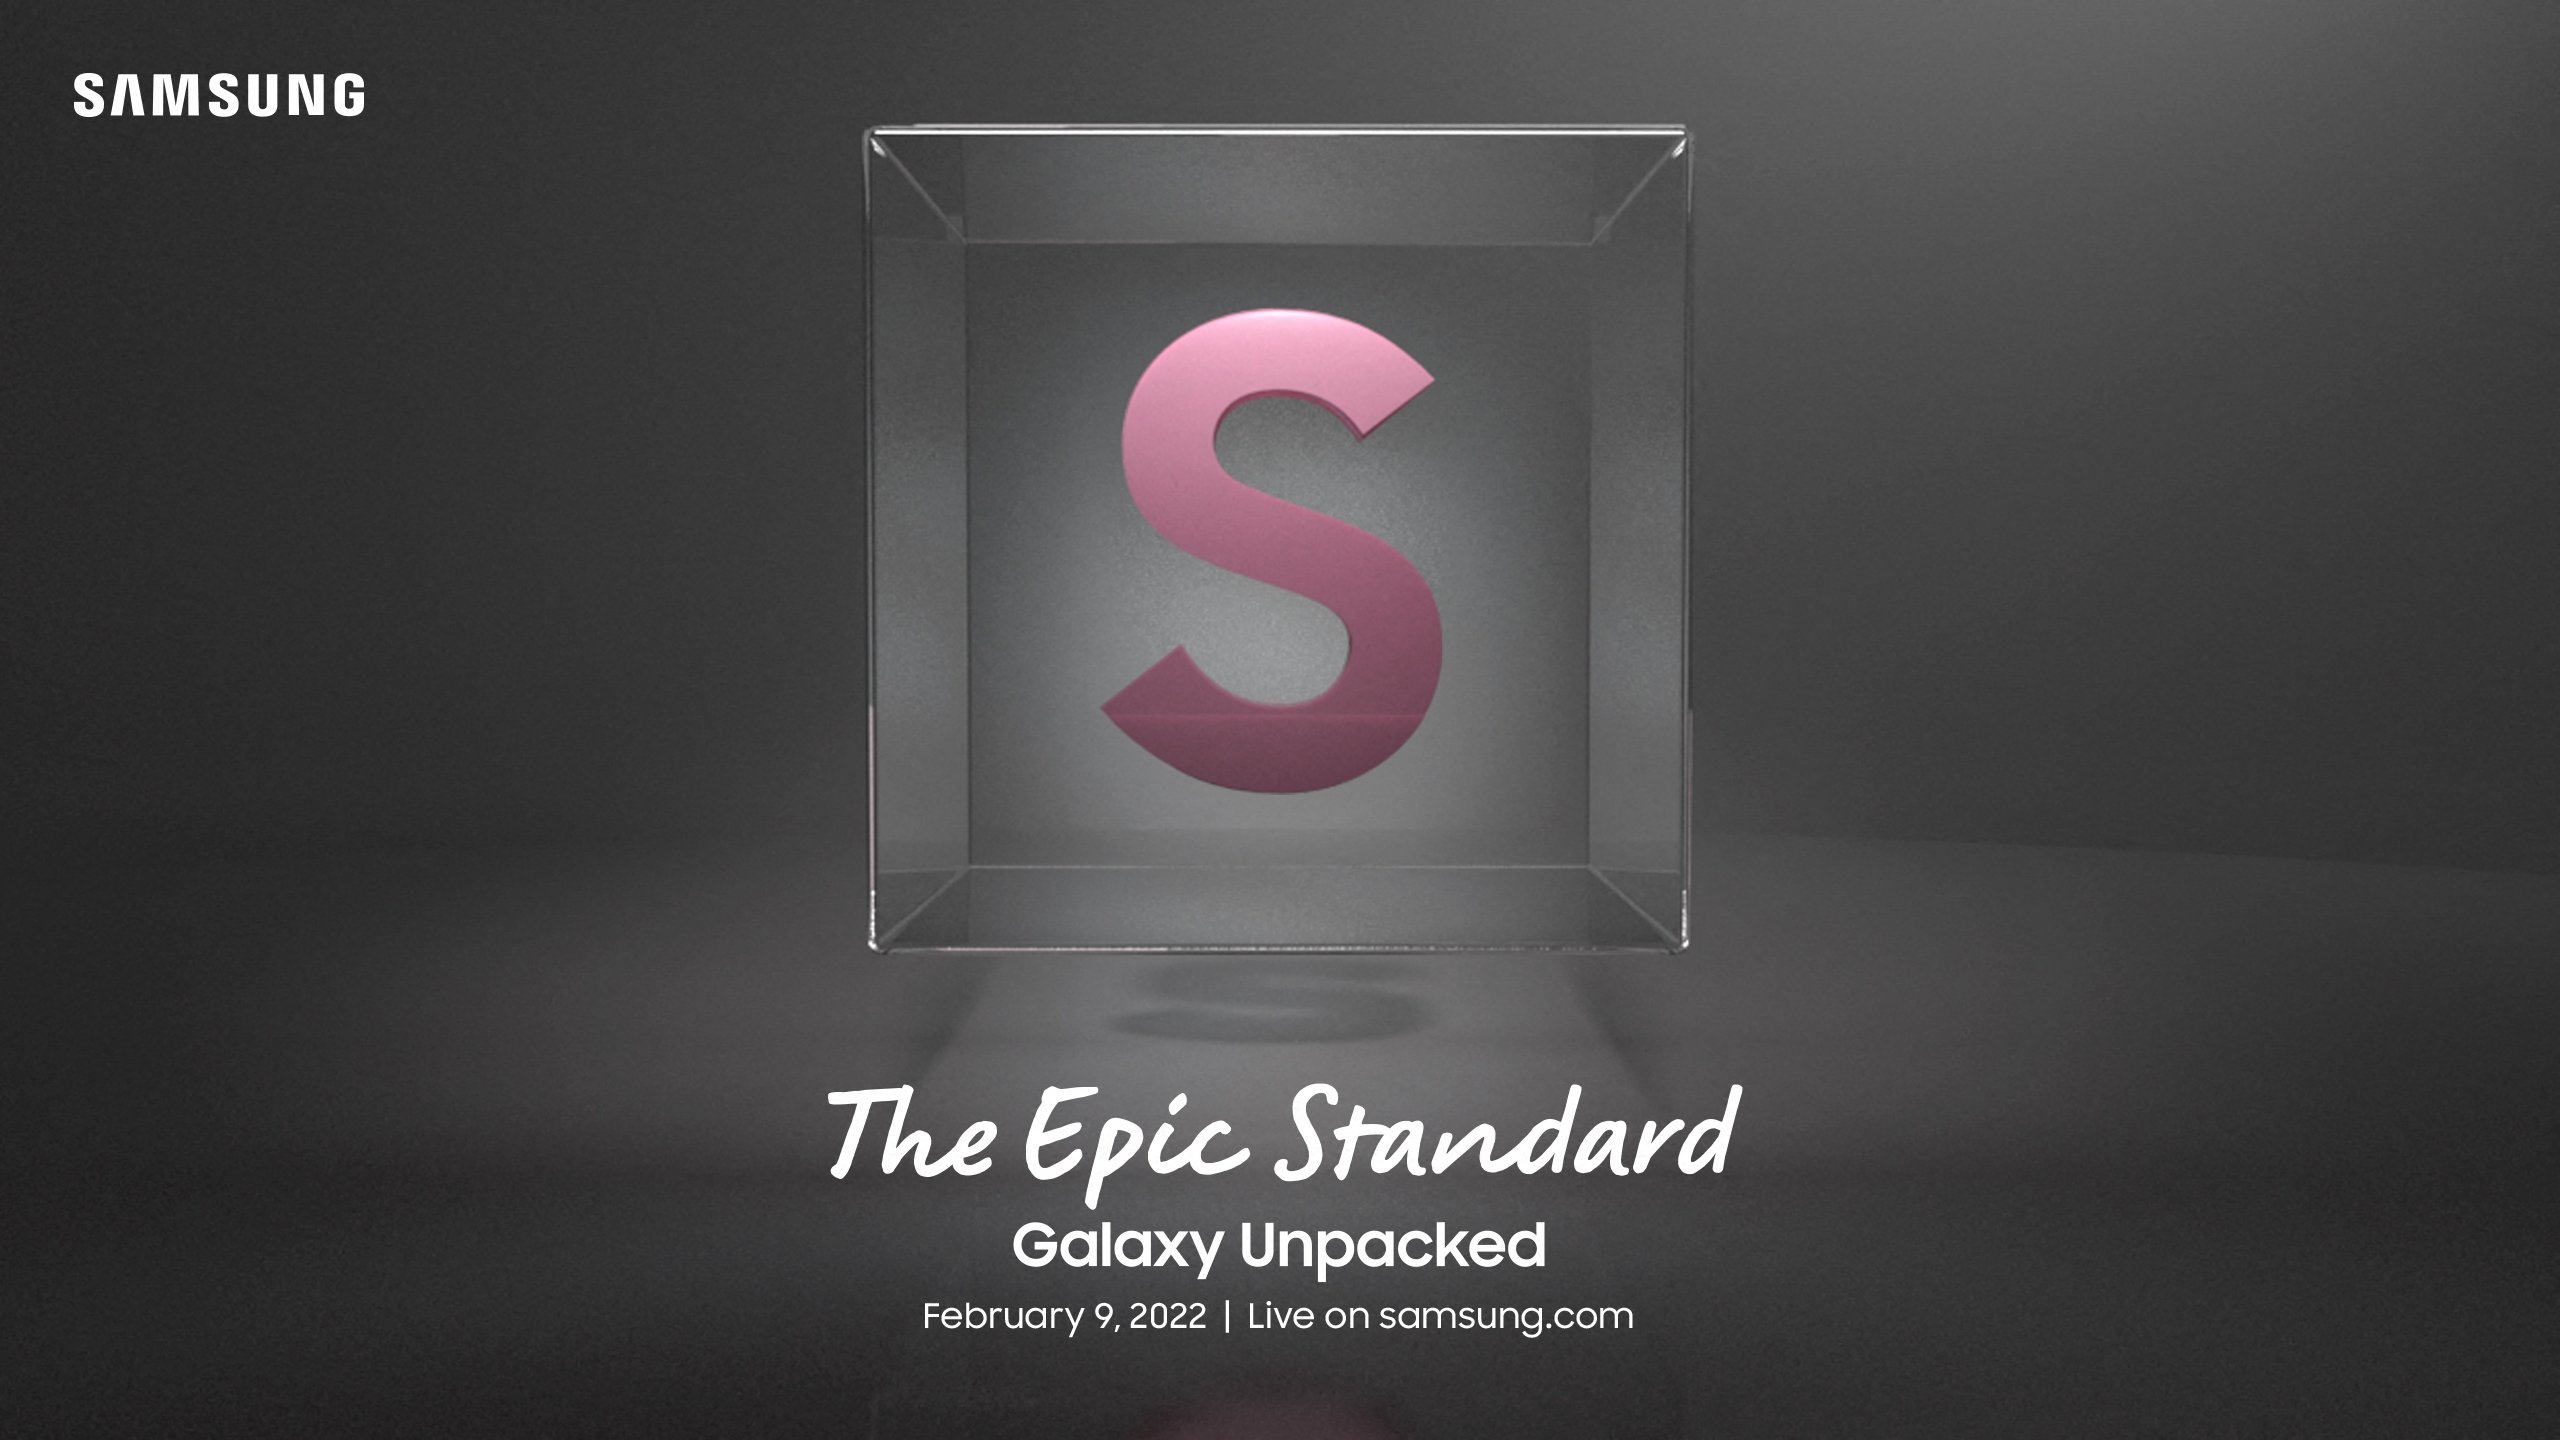 C'est désormais officiel : la présentation Galaxy Unpacked, qui présentera les smartphones Galaxy S22, aura lieu le 9 février